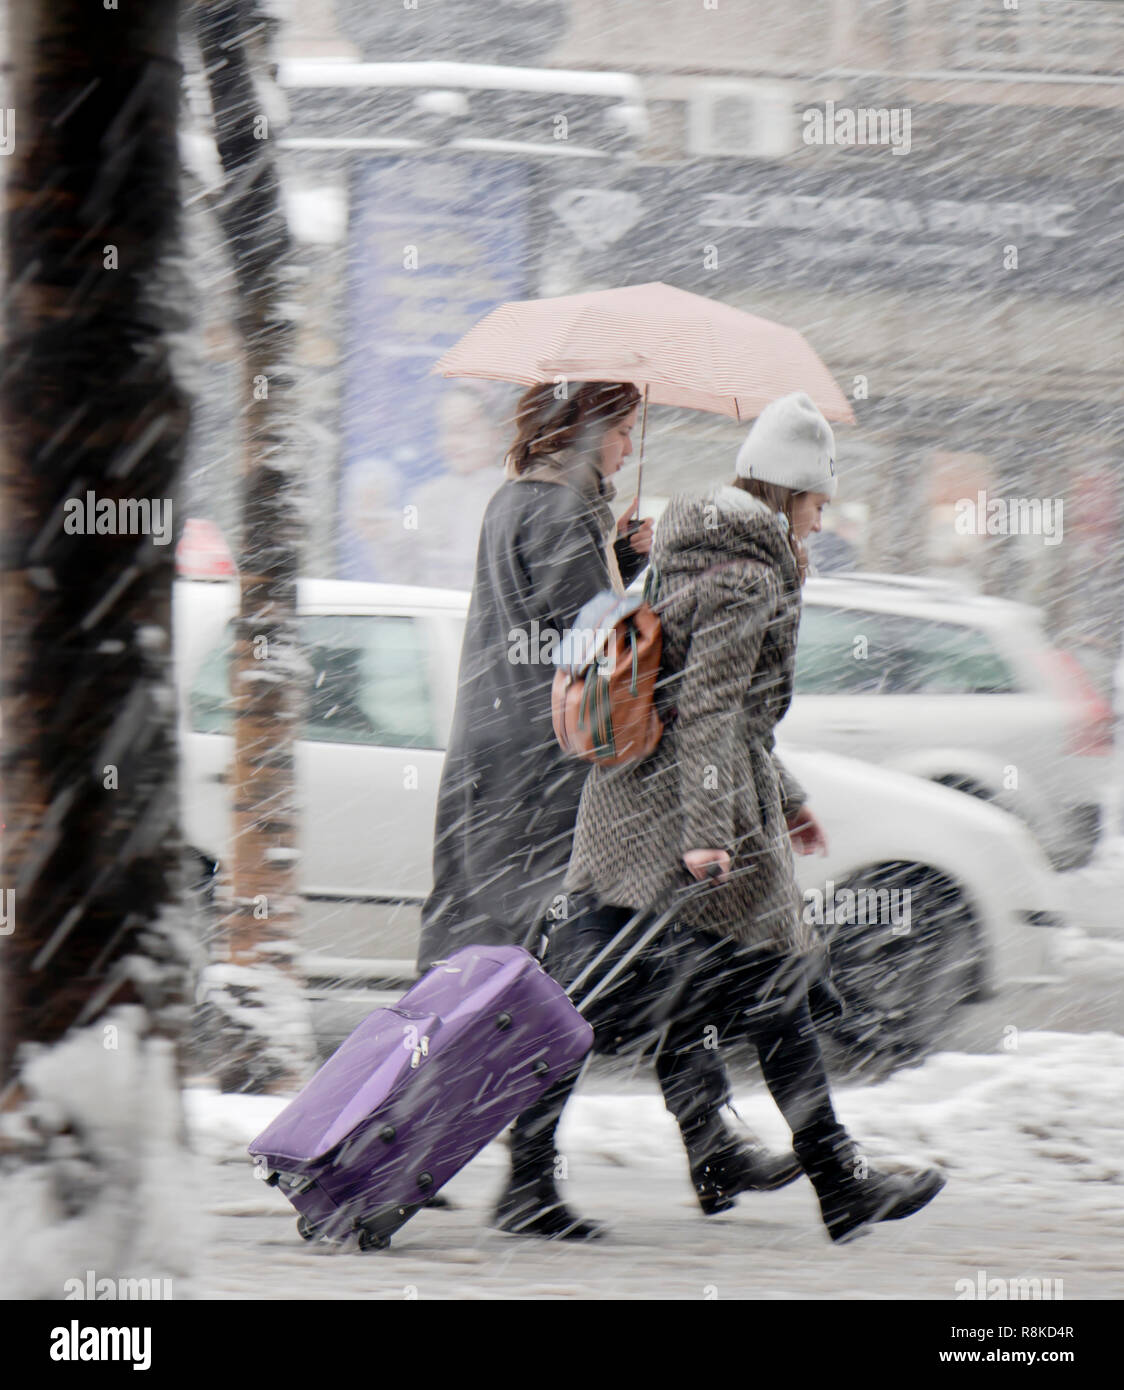 Belgrad, Serbien - Dezember 15, 2018: Zwei Mädchen im Teenager-Alter gehen unter Dach in starker Schneefall in der Stadt und man rollt ein Koffer mit Rädern Stockfoto